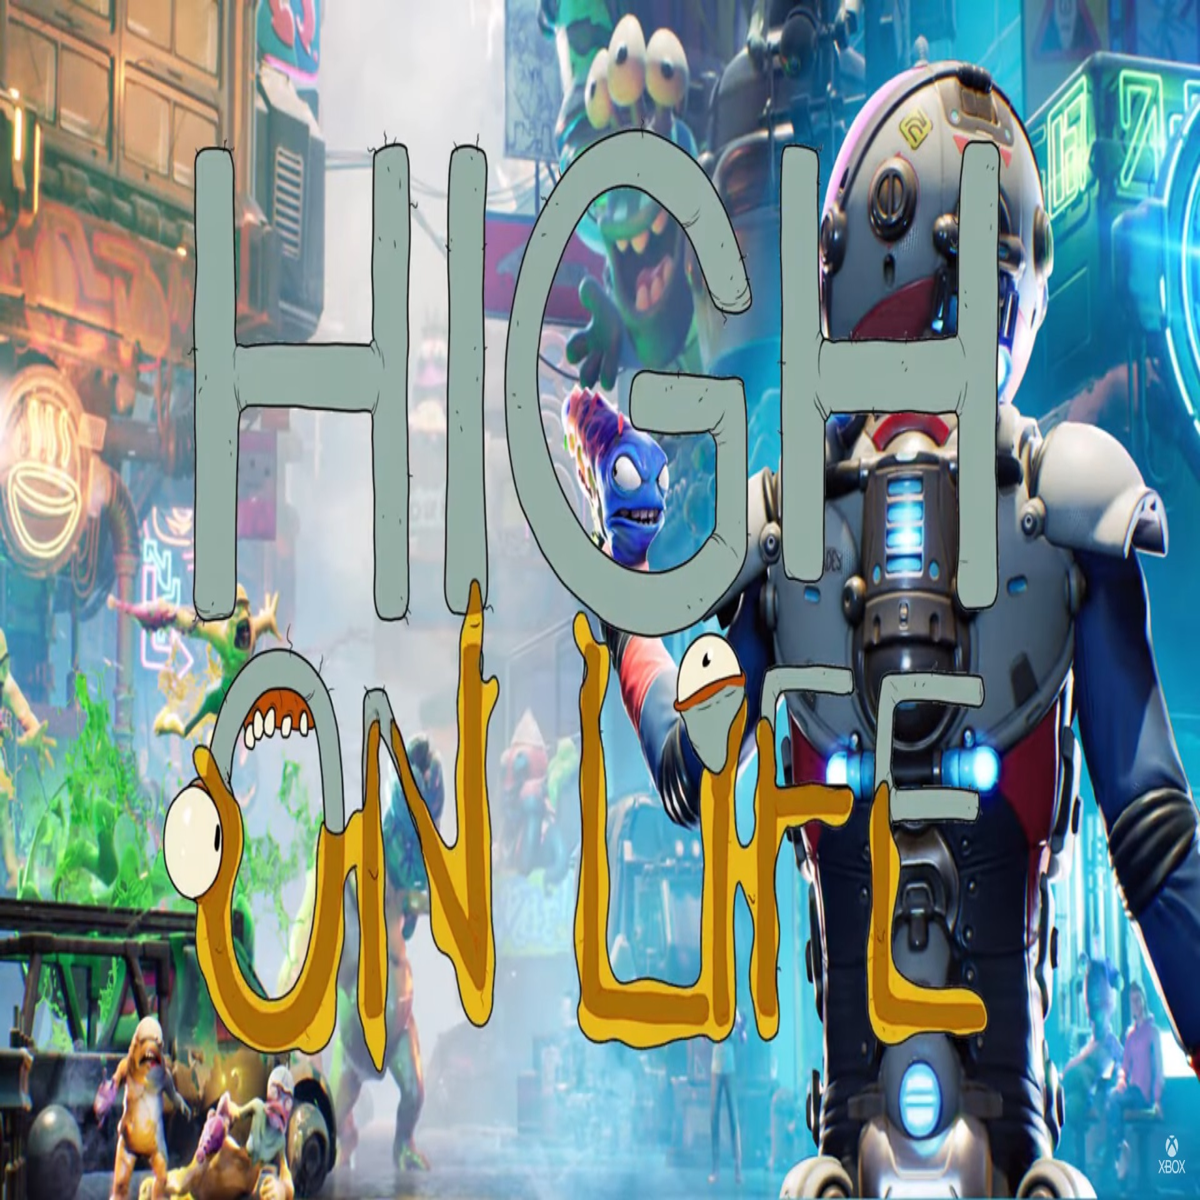 HIGH ON LIFE Walkthrough Gameplay Part 1 full game : r/highonlifegame